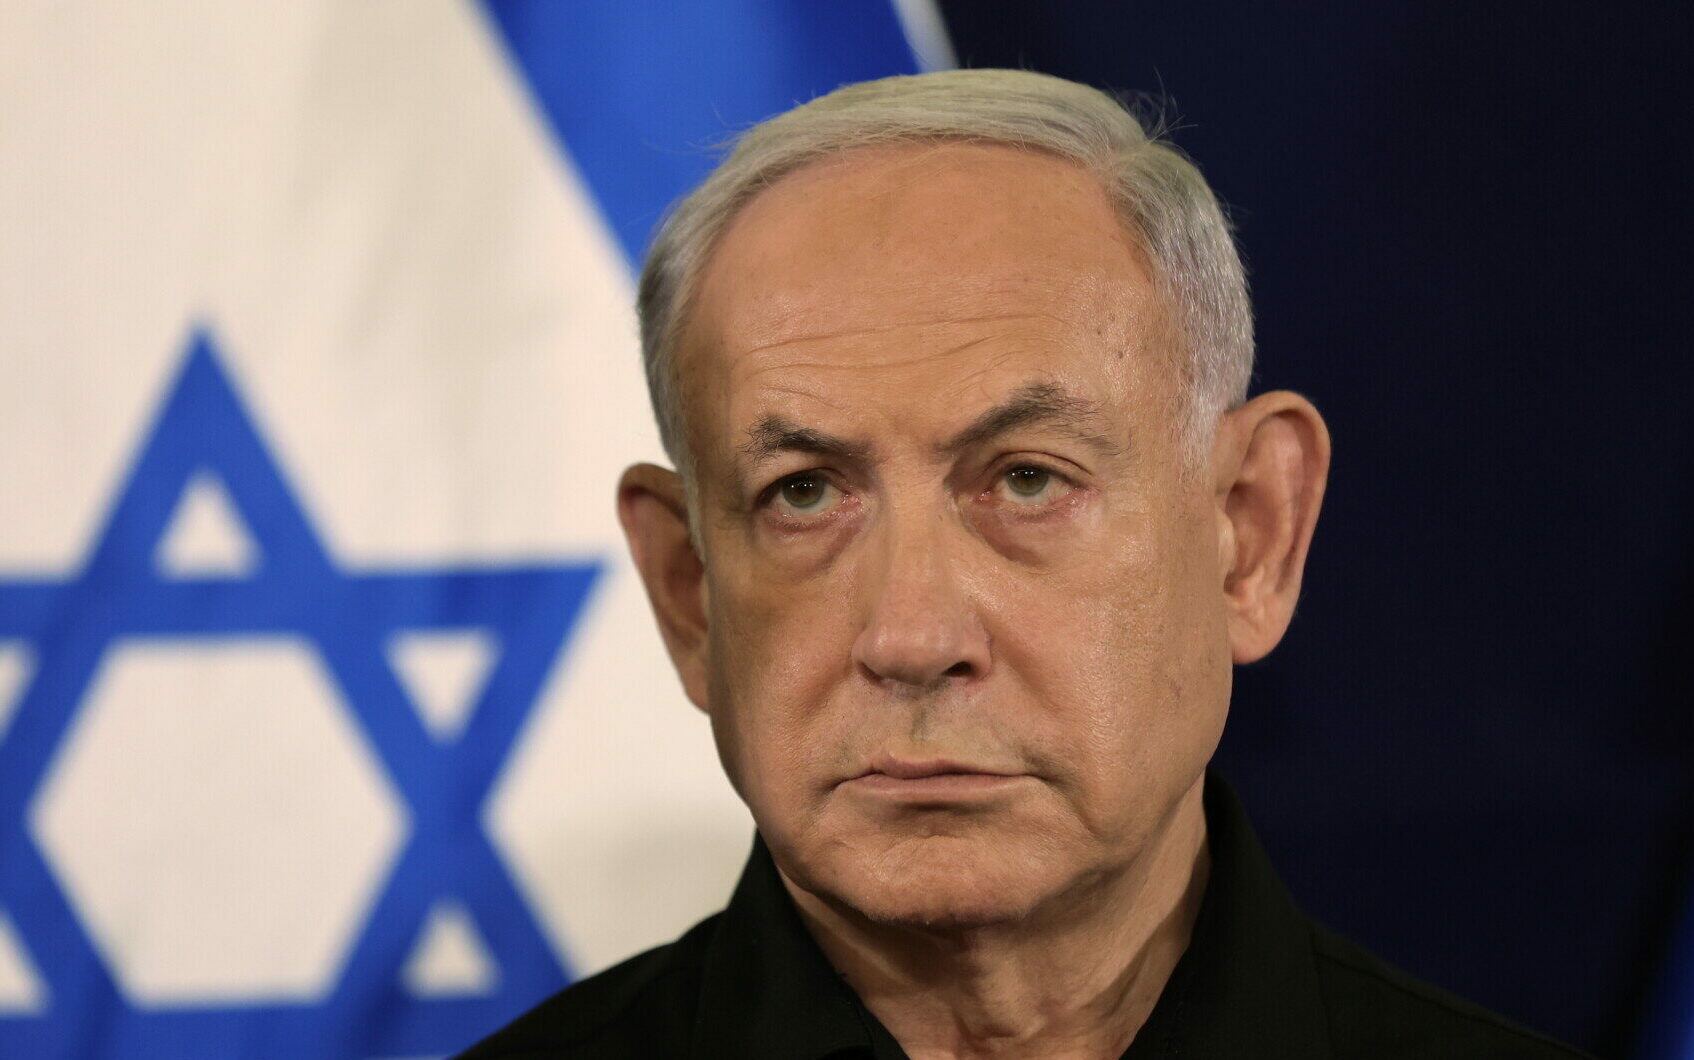 Ο πρωθυπουργός του Ισραήλ, Μπενιαμίν Νετανιάχου © EPA/ABIR SULTAN / POOL